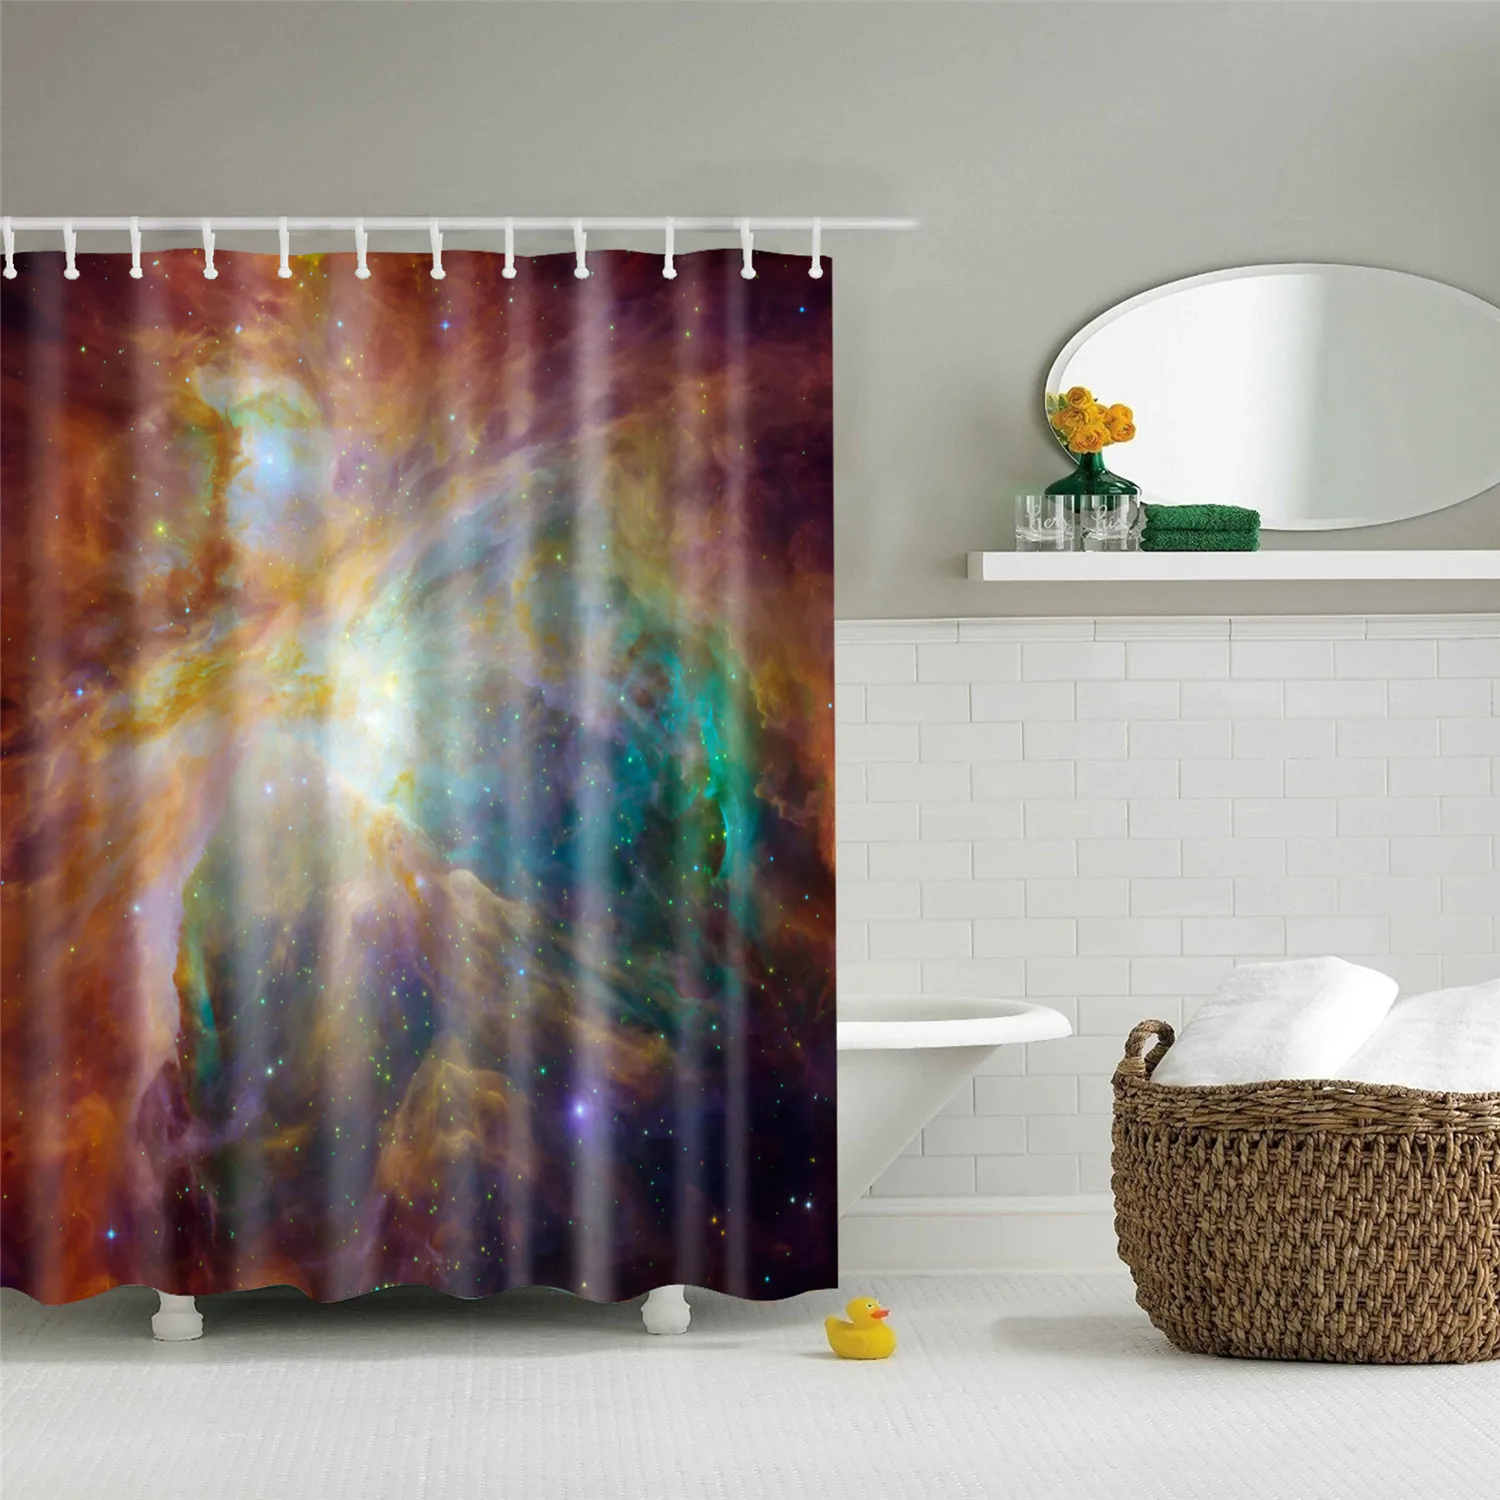 Galaxy Night, звездное небо, занавеска для ванной, 180x200 см, водостойкая полиэфирная ткань, занавеска для душа, 3D затемненная занавеска для ванной комнаты